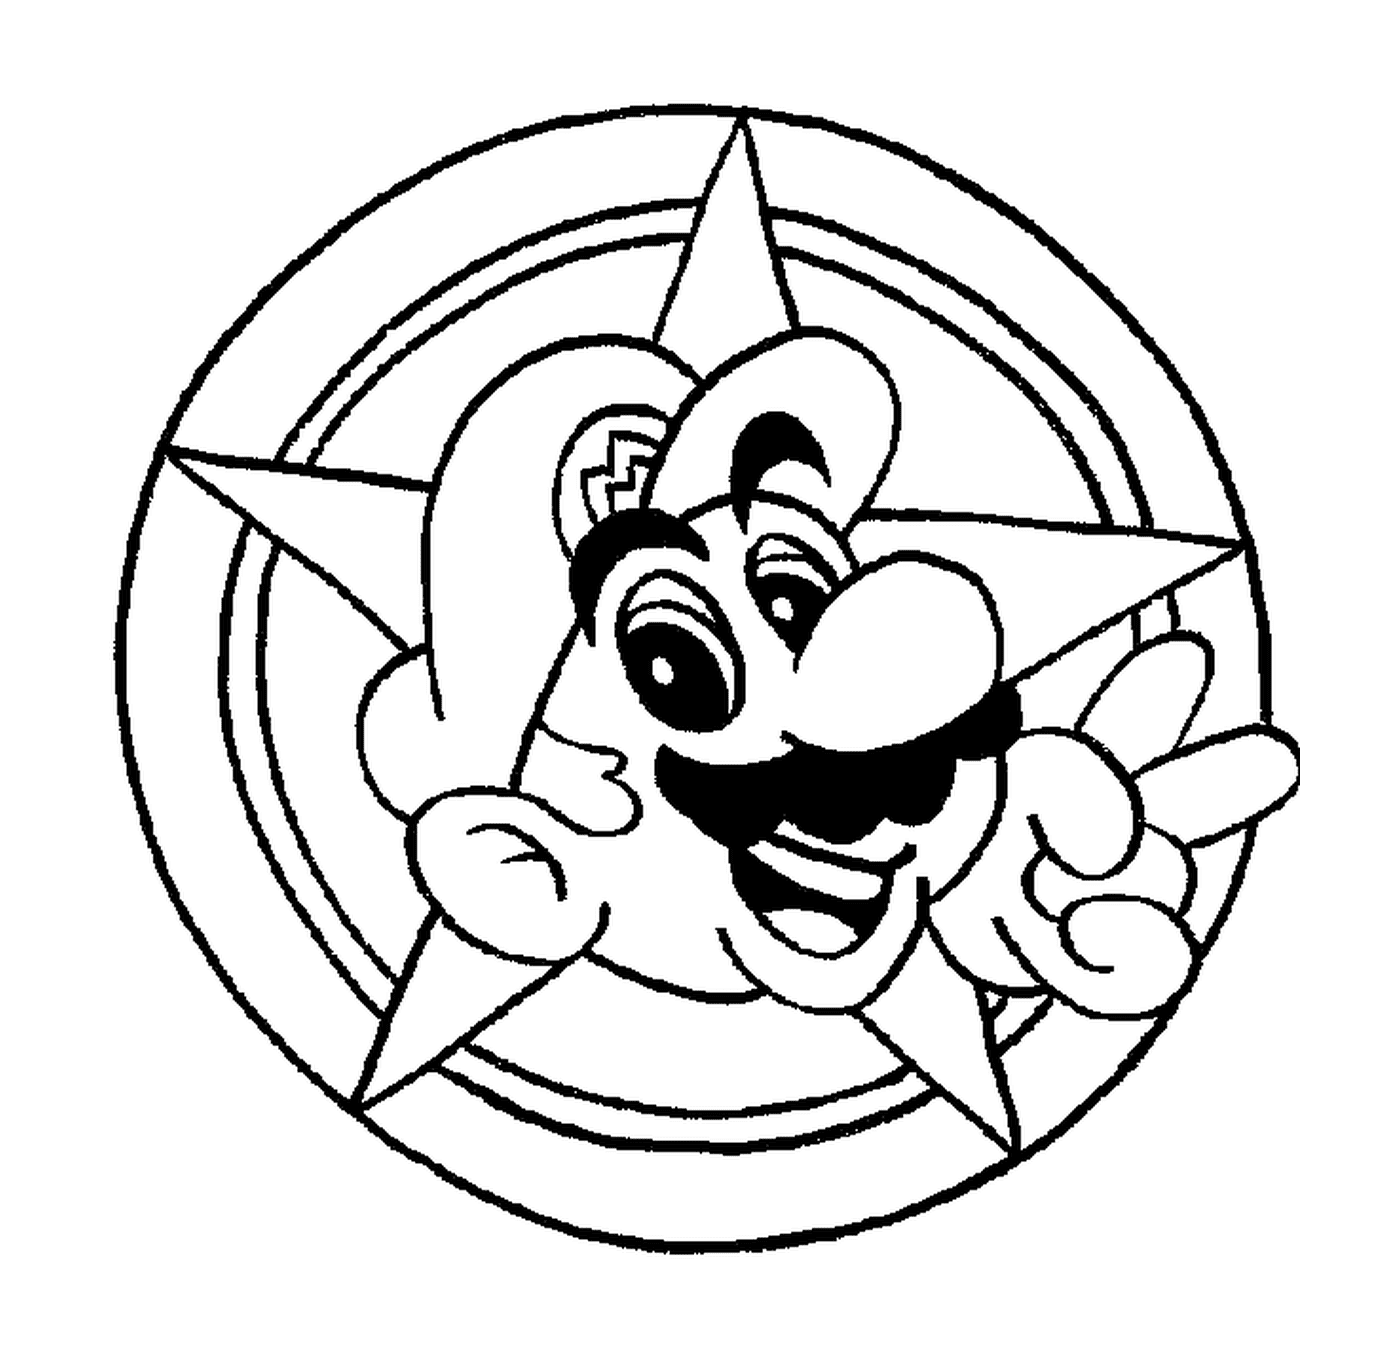 tete de Mario dans un cercle